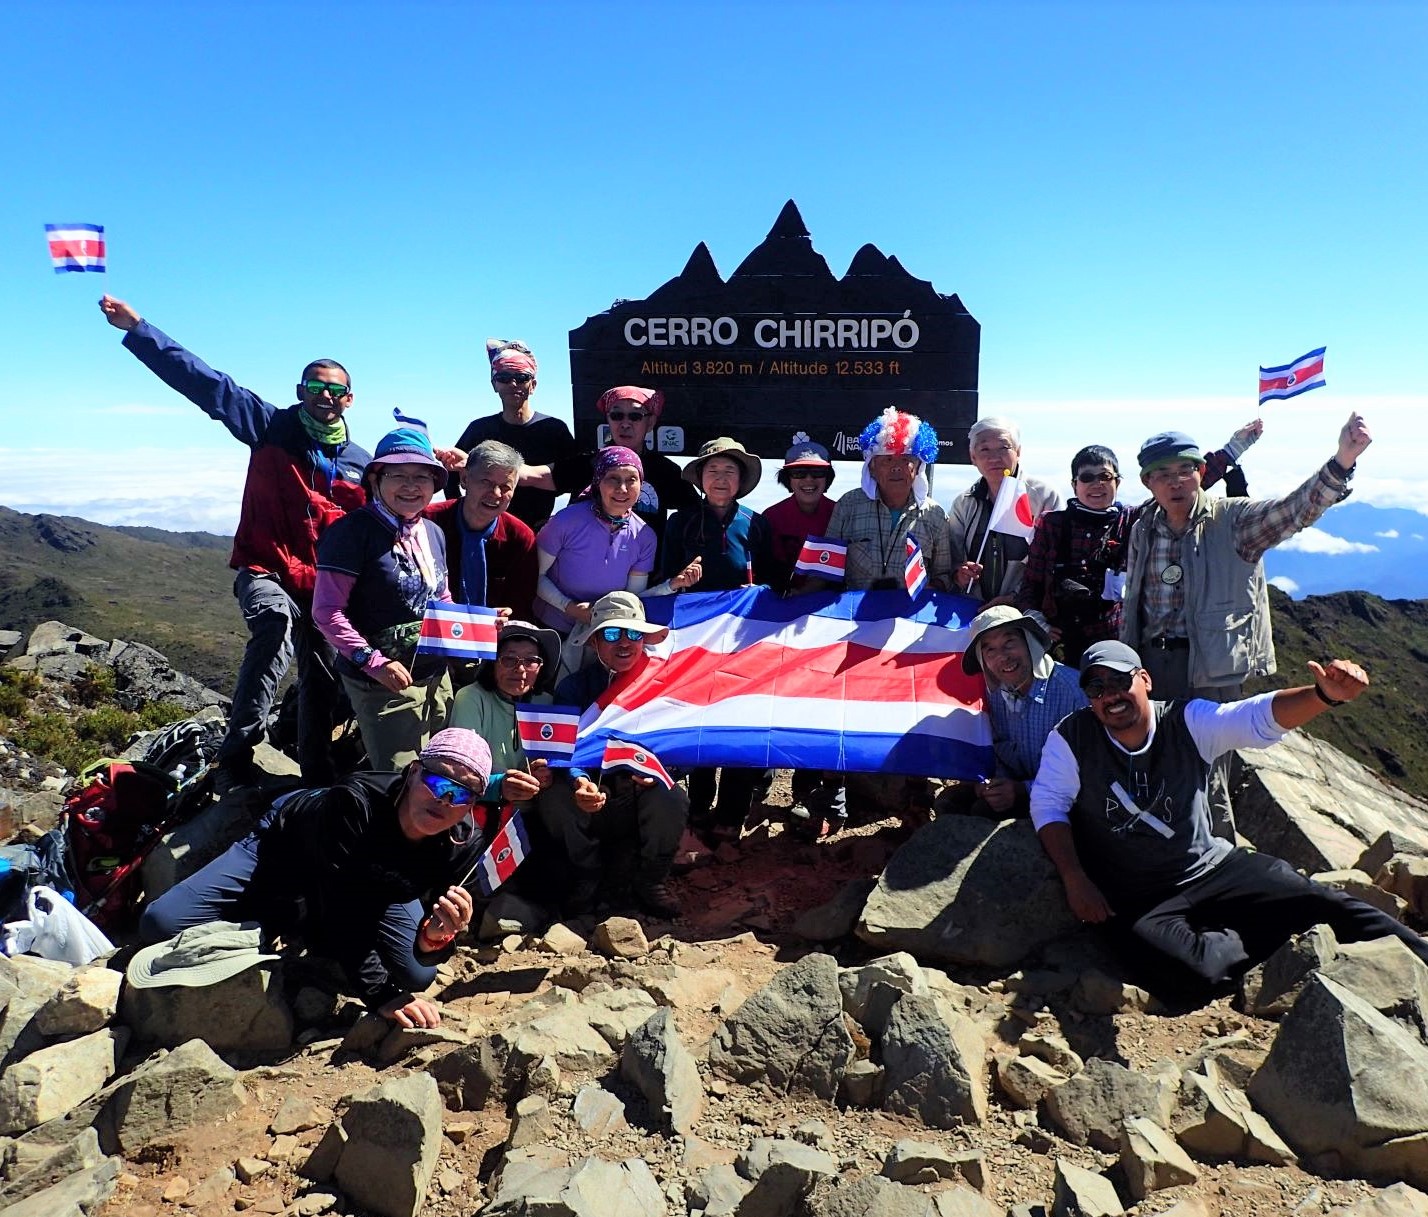 2月9日出発「コスタリカ最高峰チリポ山登頂と 幻の鳥ケツァールを求めて 11日間」